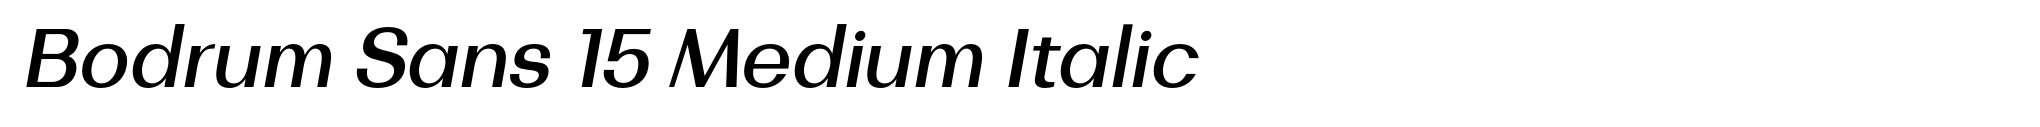 Bodrum Sans 15 Medium Italic image